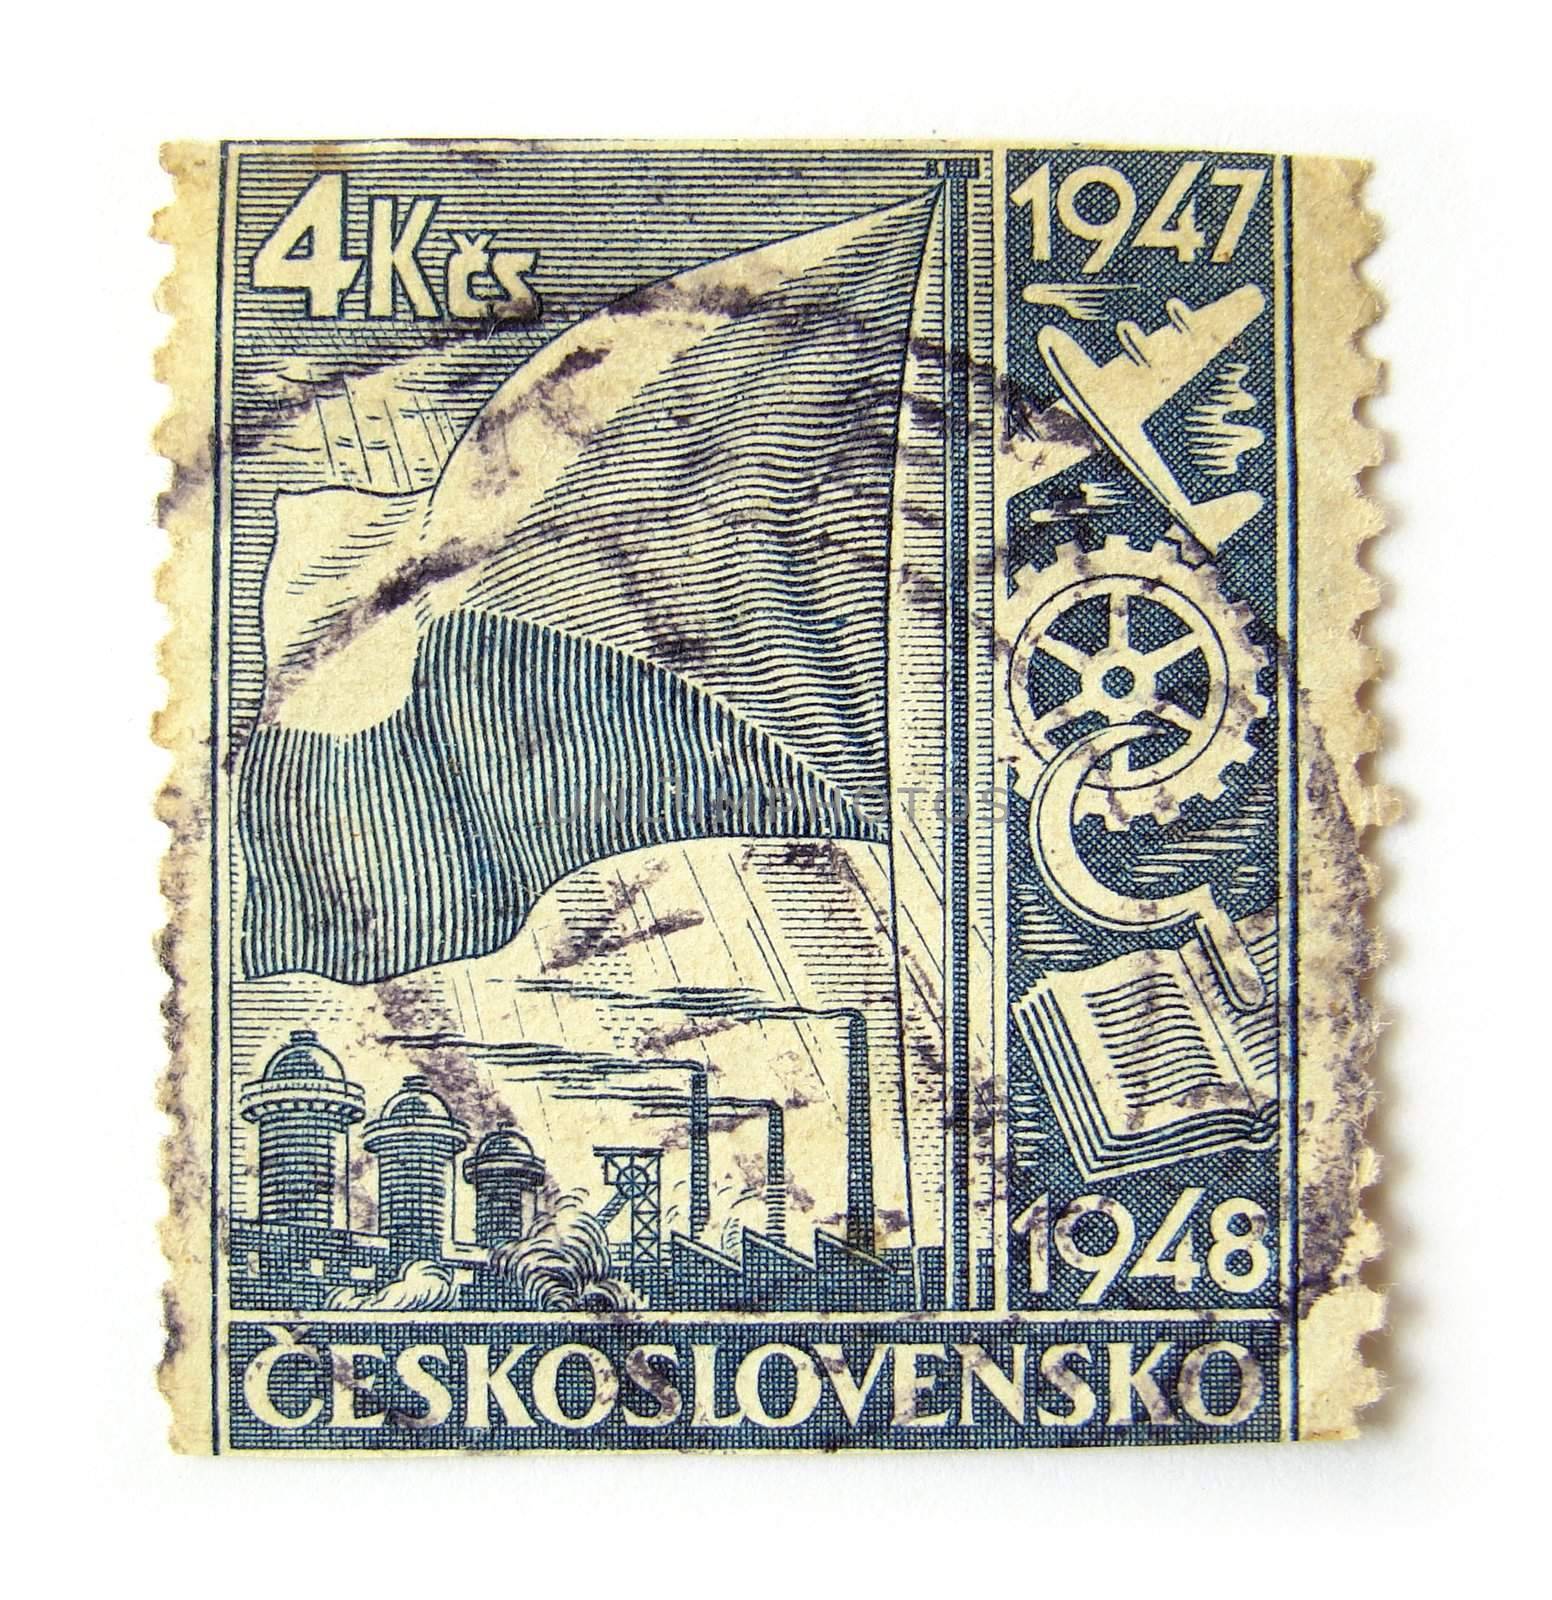 Czechoslovakia Postage Stamp by Flaps